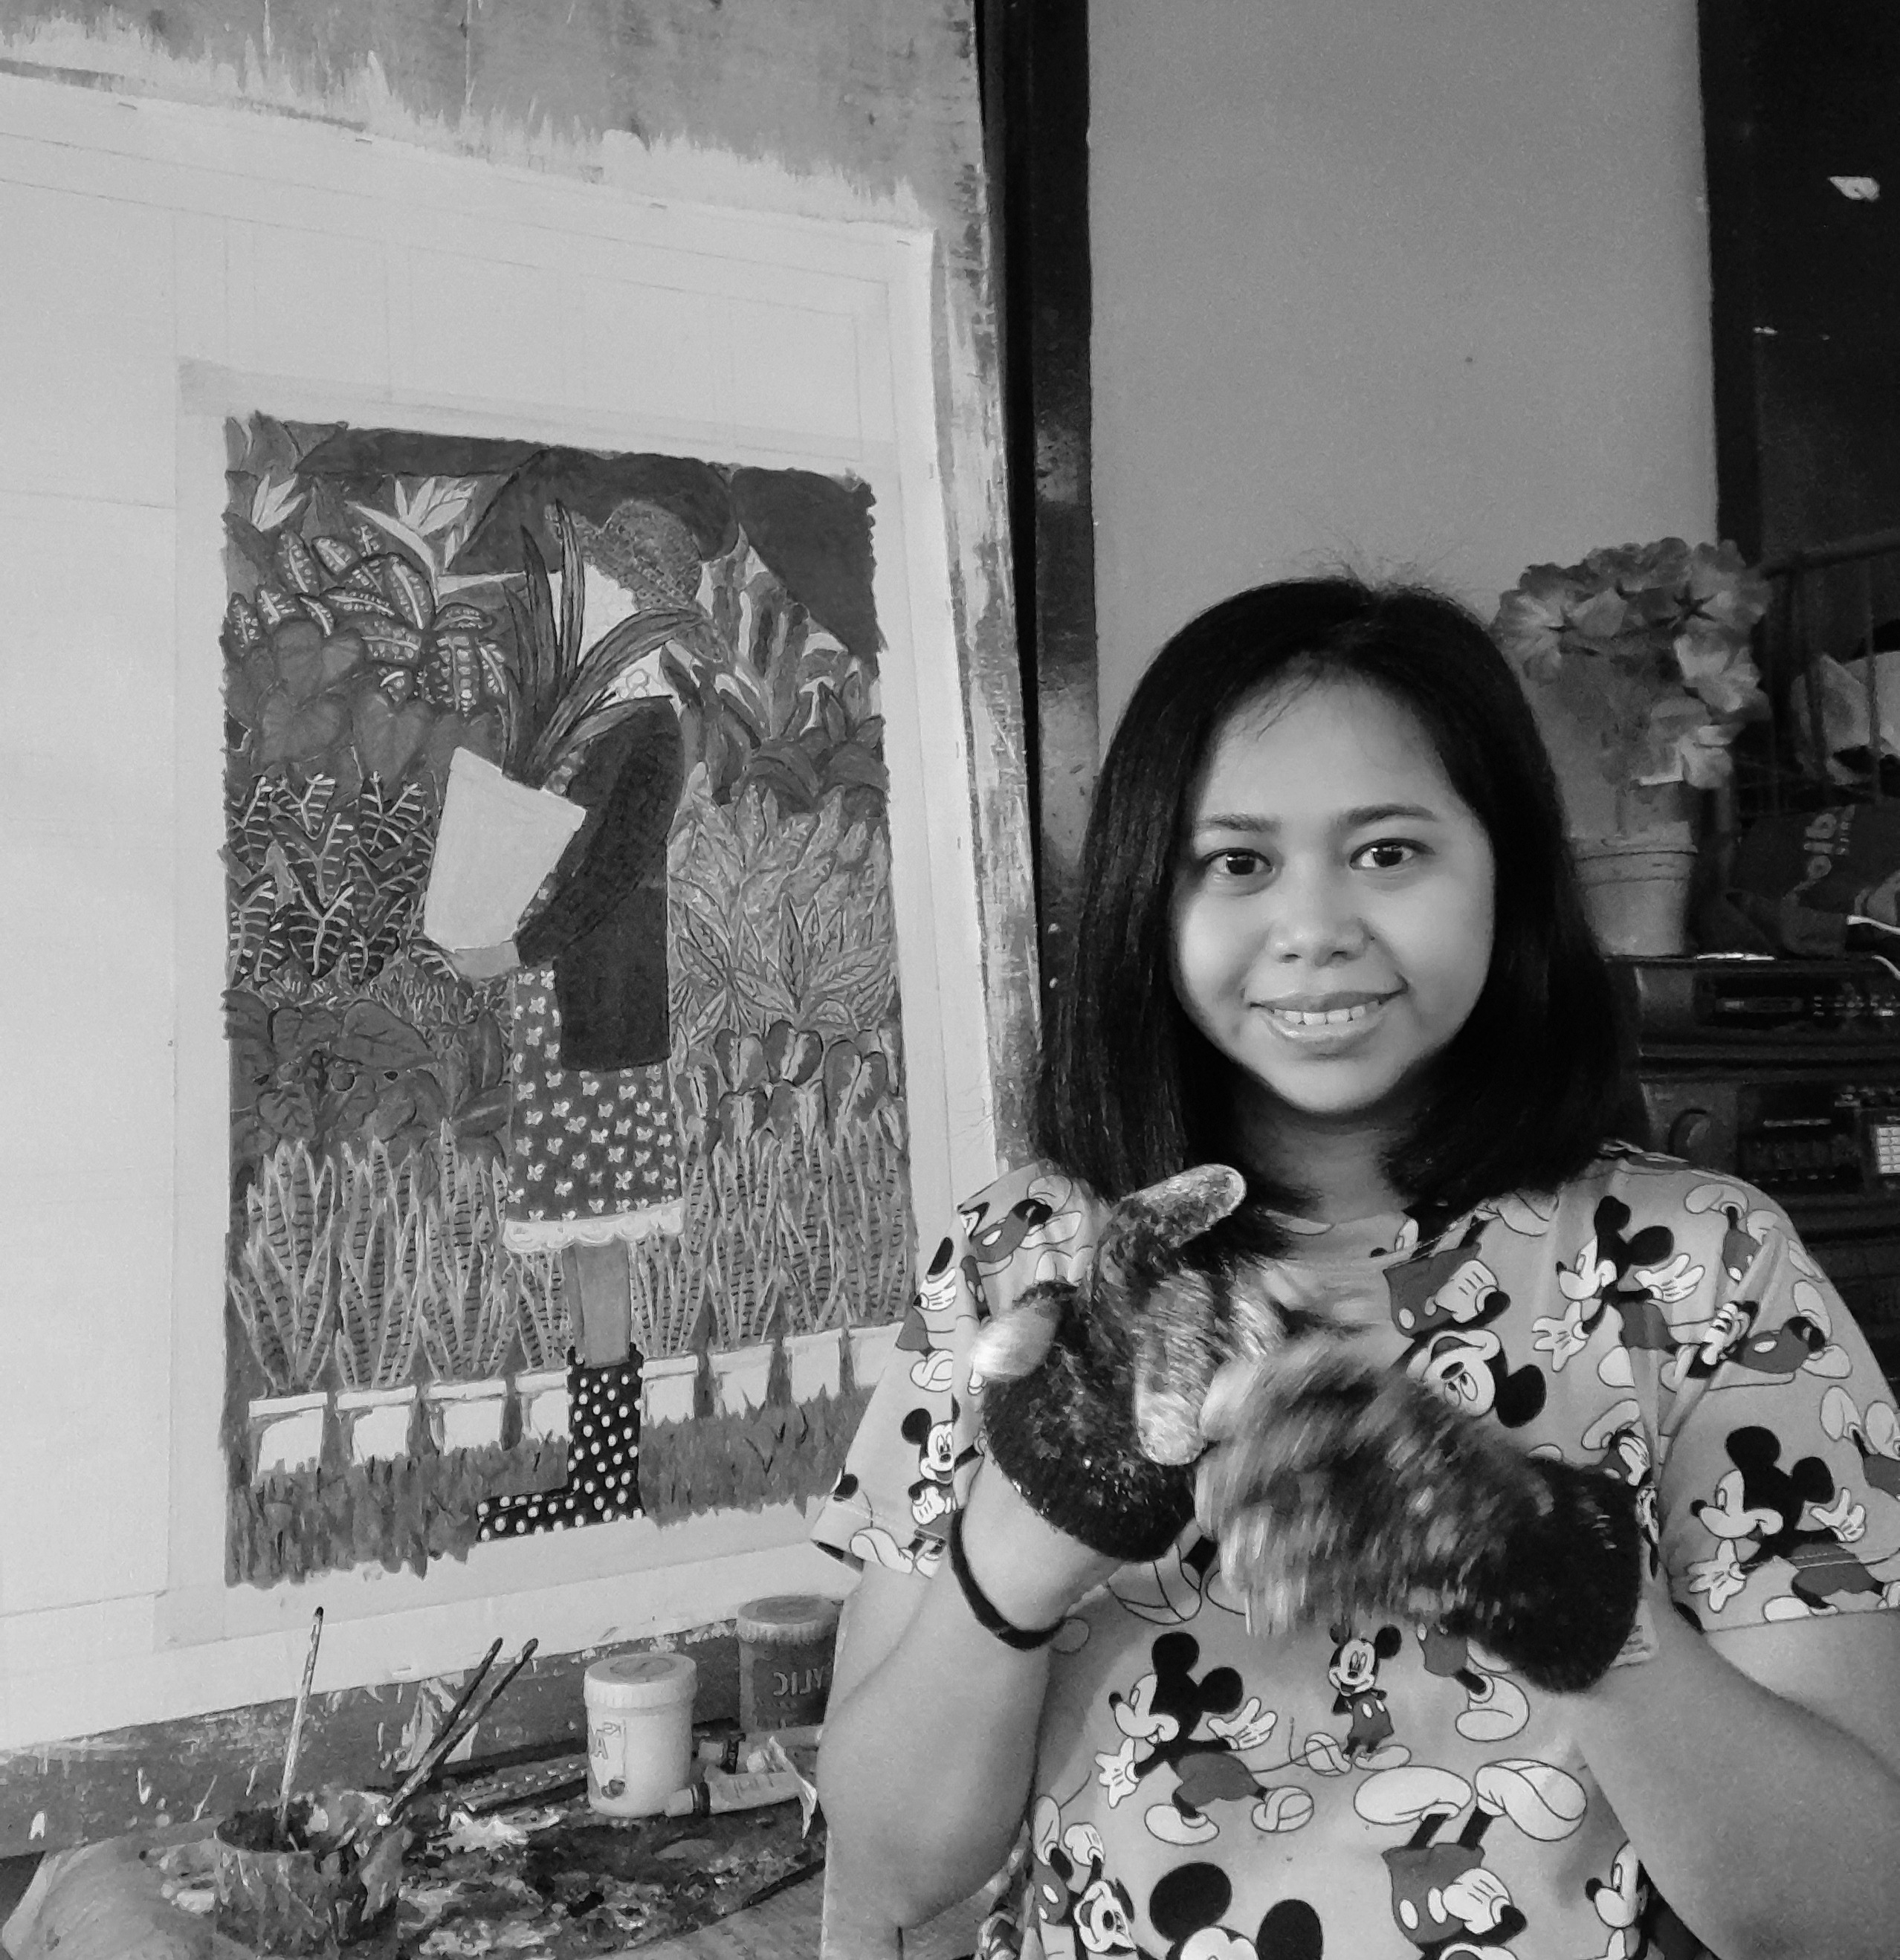 drybrush Philippine Art Gallery - Chariline Bigbig Painter